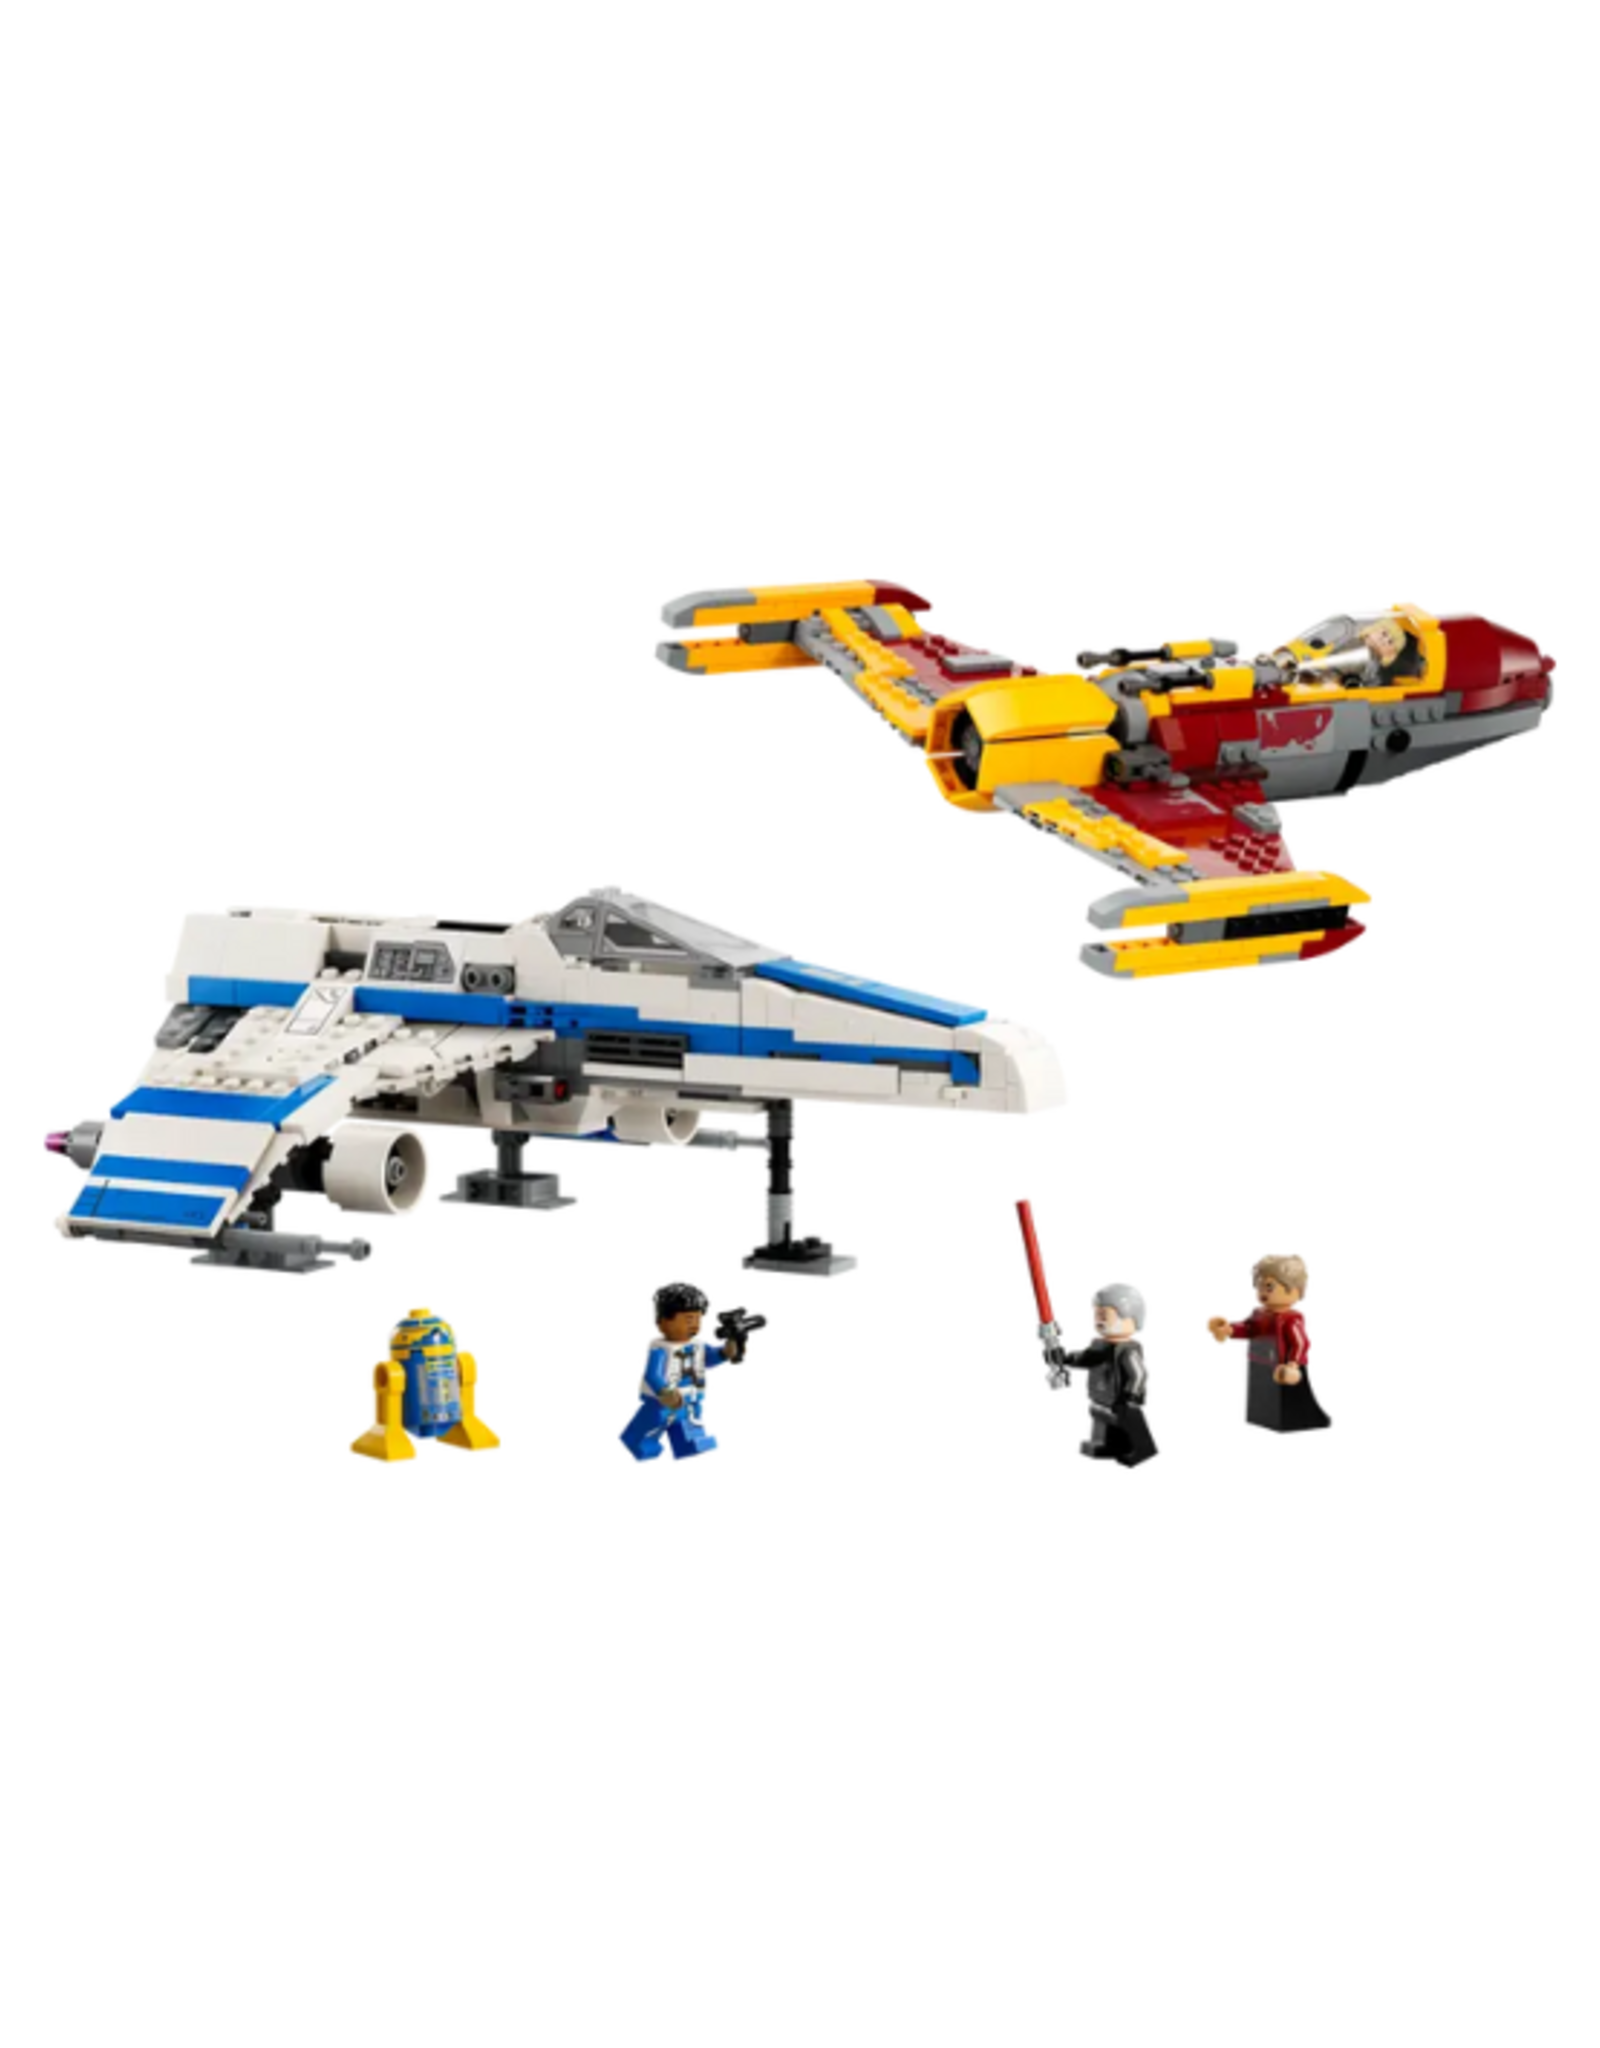 Lego Lego - Star Wars - 75364 - New Republic E-Wing™ vs. Shin Hati’s Starfighter™